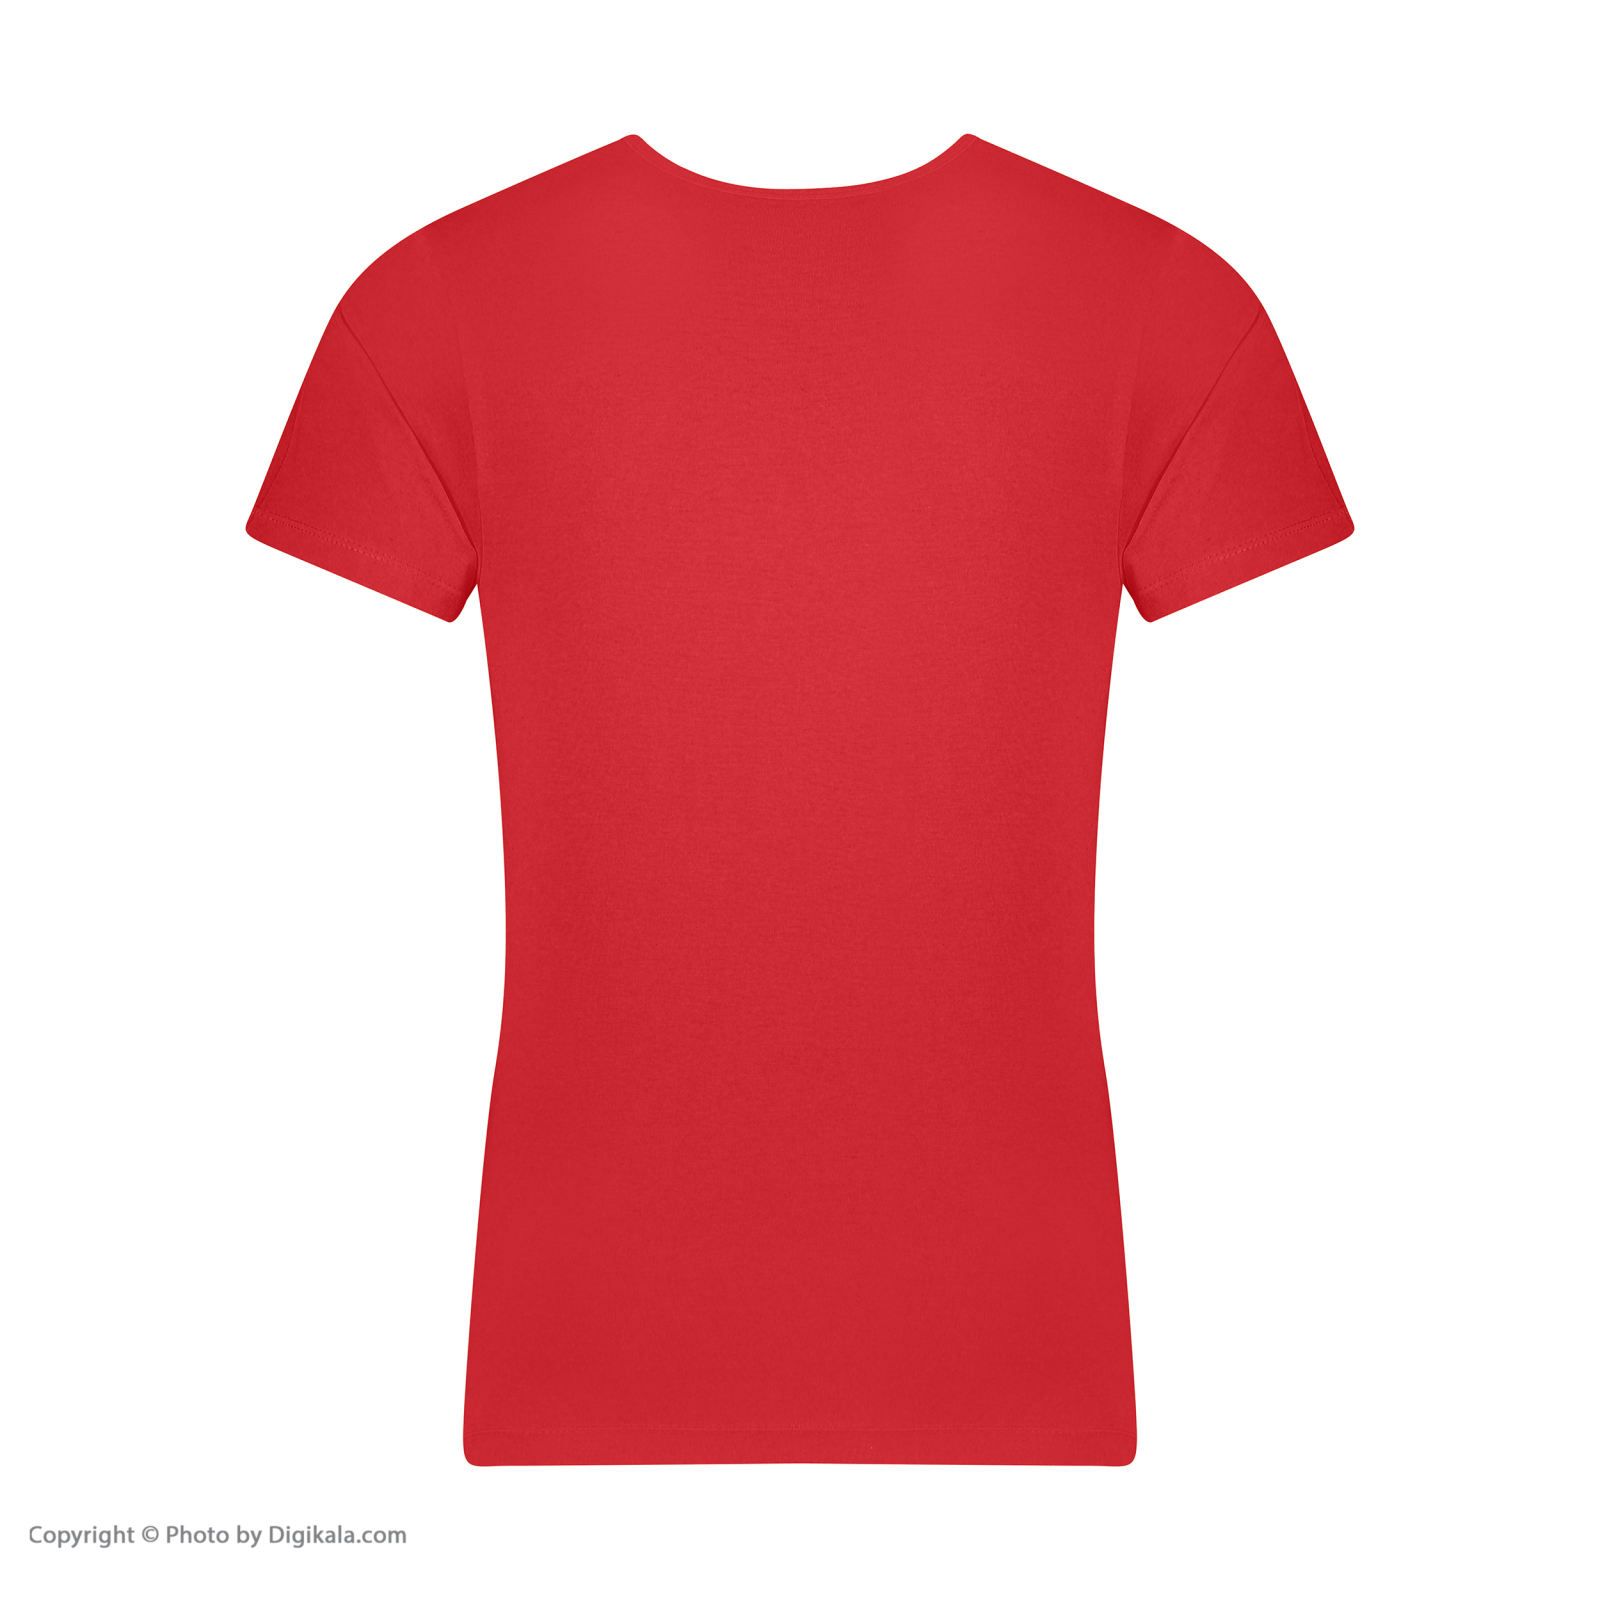 زیرپوش آستین دار مردانه برهان تن پوش مدل 2-02  رنگ قرمز بسته 12 عددی -  - 5